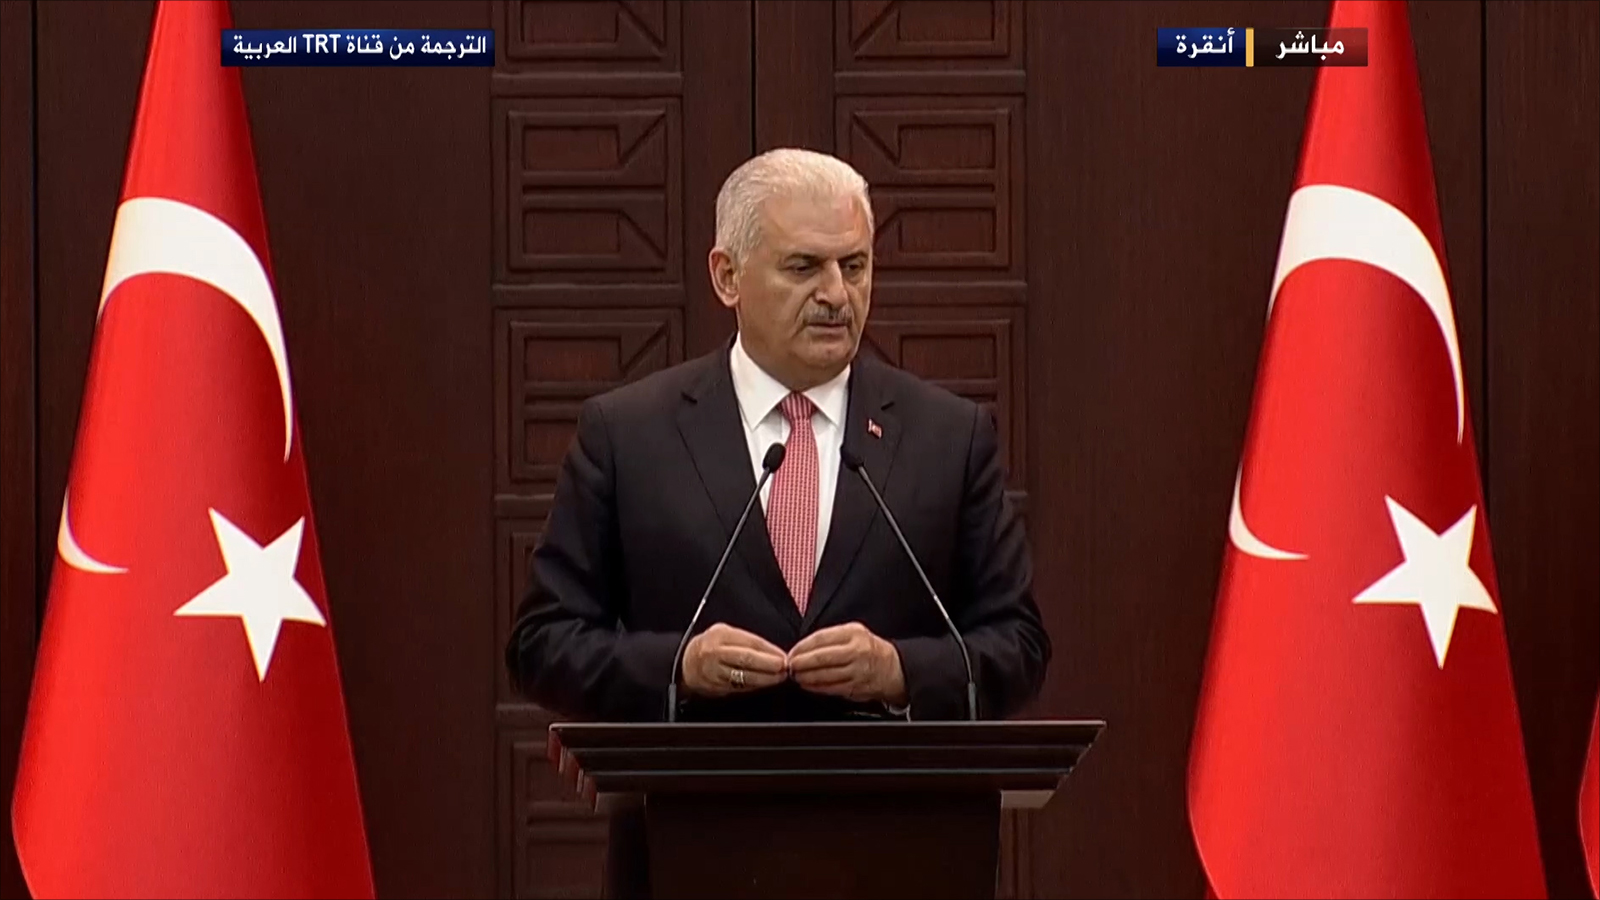 ‪رئيس وزراء تركيا بن علي يلدرم أعلن استئناف العلاقات مع إسرائيل‬ (الجزيرة)